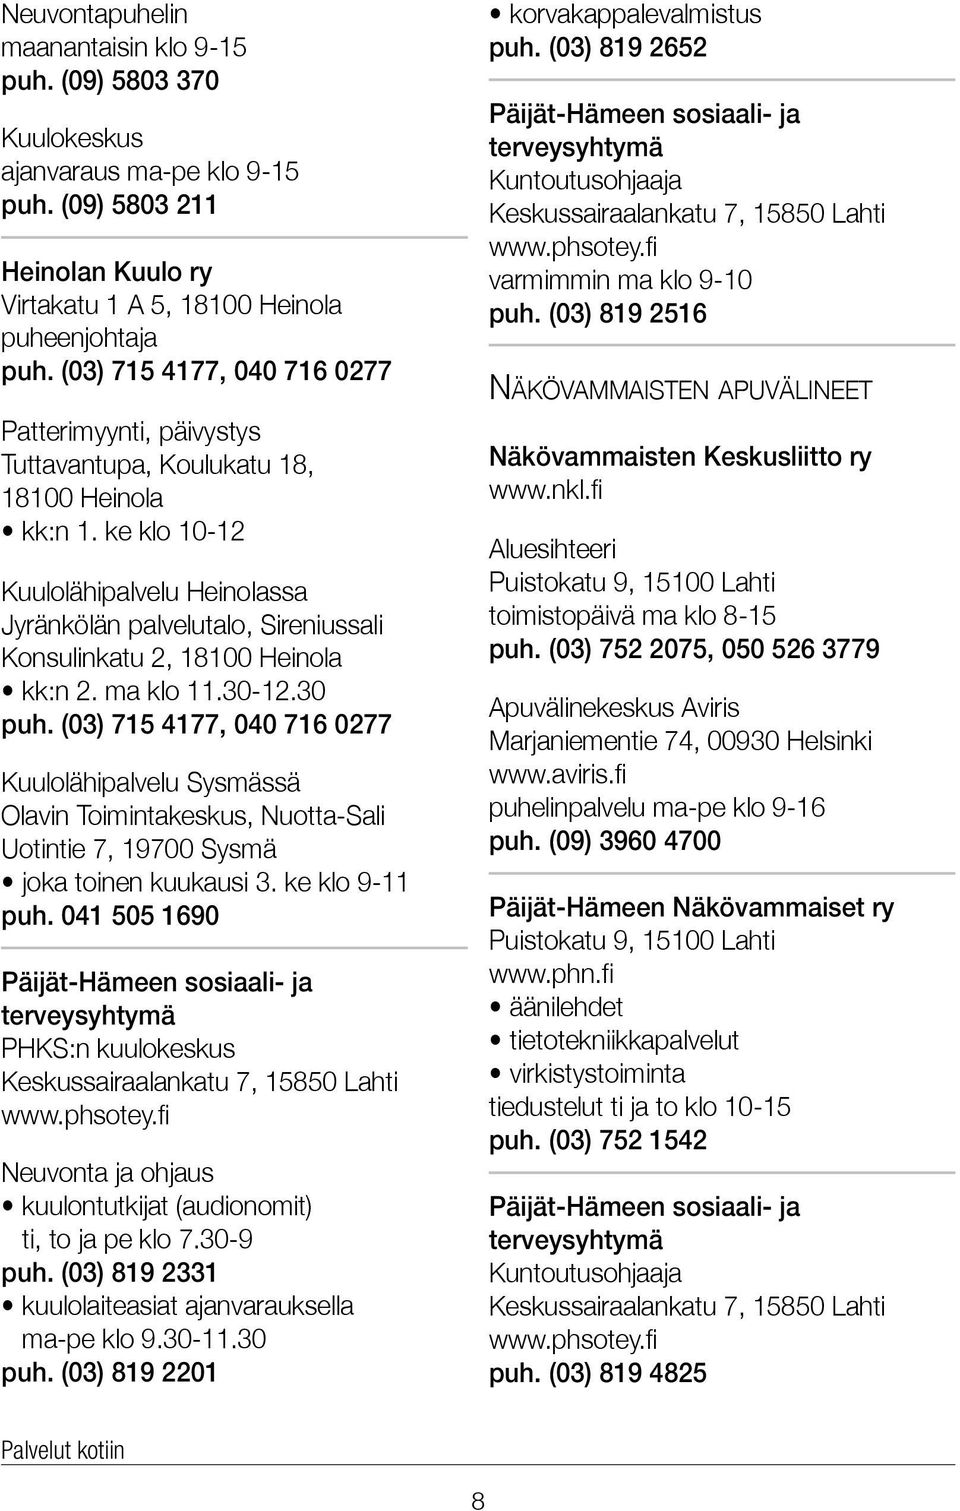 ke klo 10-12 Kuulolähipalvelu Heinolassa Jyränkölän palvelutalo, Sireniussali Konsulinkatu 2, 18100 Heinola kk:n 2. ma klo 11.30-12.30 puh.